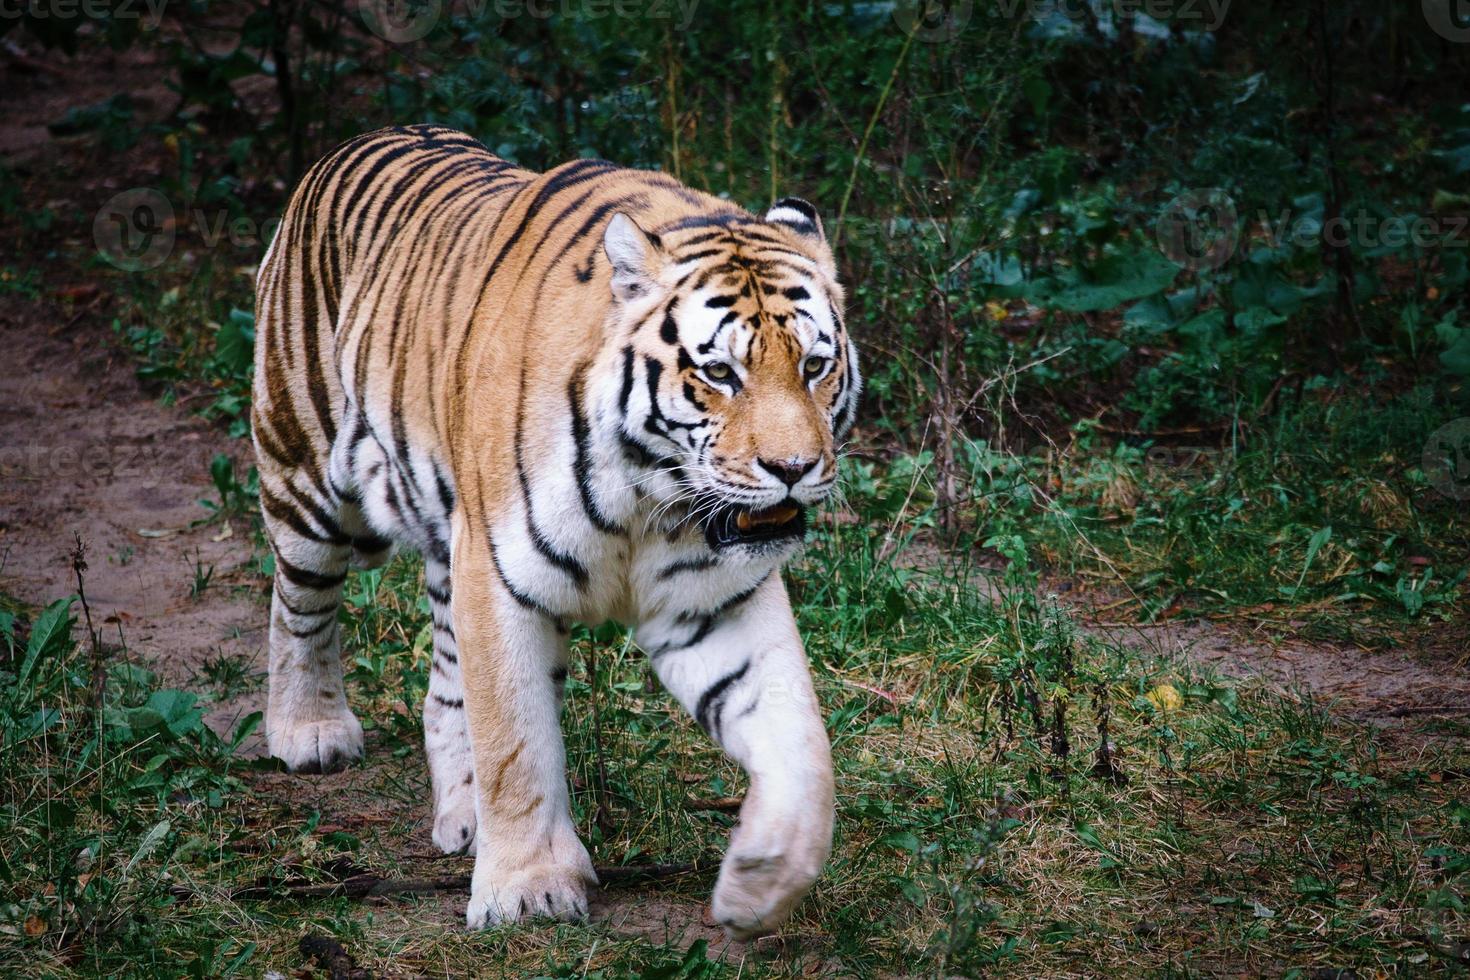 tigre de Sibérie. grand chat élégant. prédateur en voie de disparition. fourrure rayée blanche, noire, orange photo